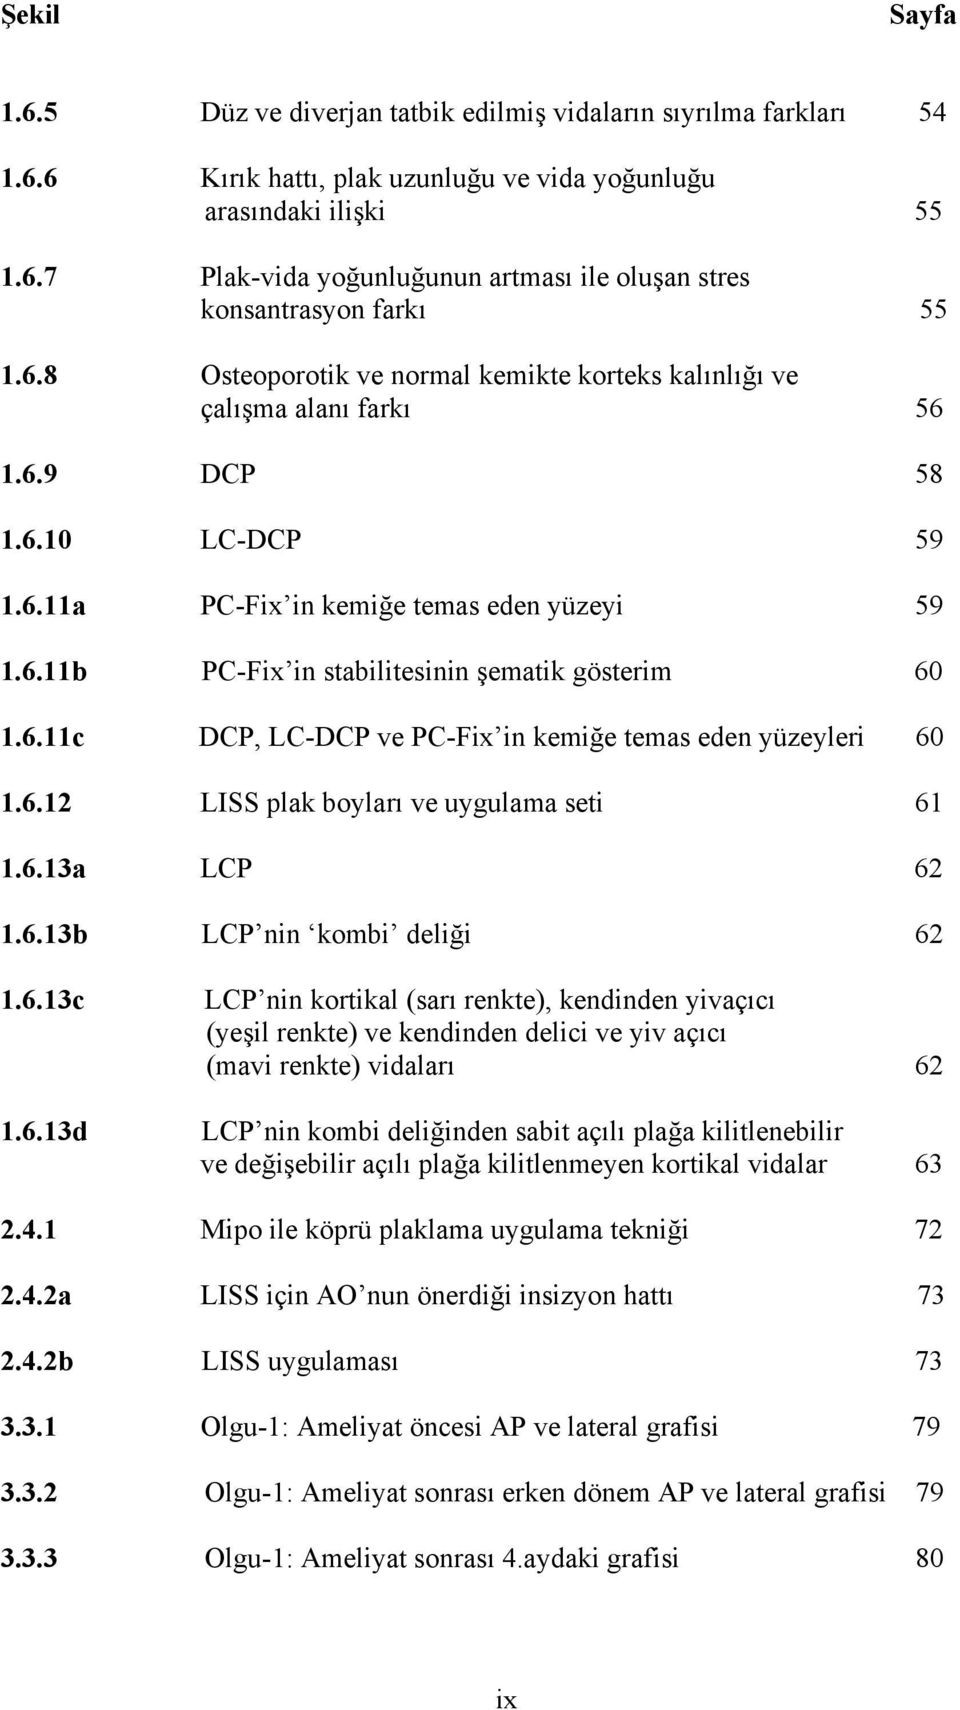 6.11c DCP, LC-DCP ve PC-Fix in kemiğe temas eden yüzeyleri 60 1.6.12 LISS plak boyları ve uygulama seti 61 1.6.13a LCP 62 1.6.13b LCP nin kombi deliği 62 1.6.13c 1.6.13d LCP nin kortikal (sarı